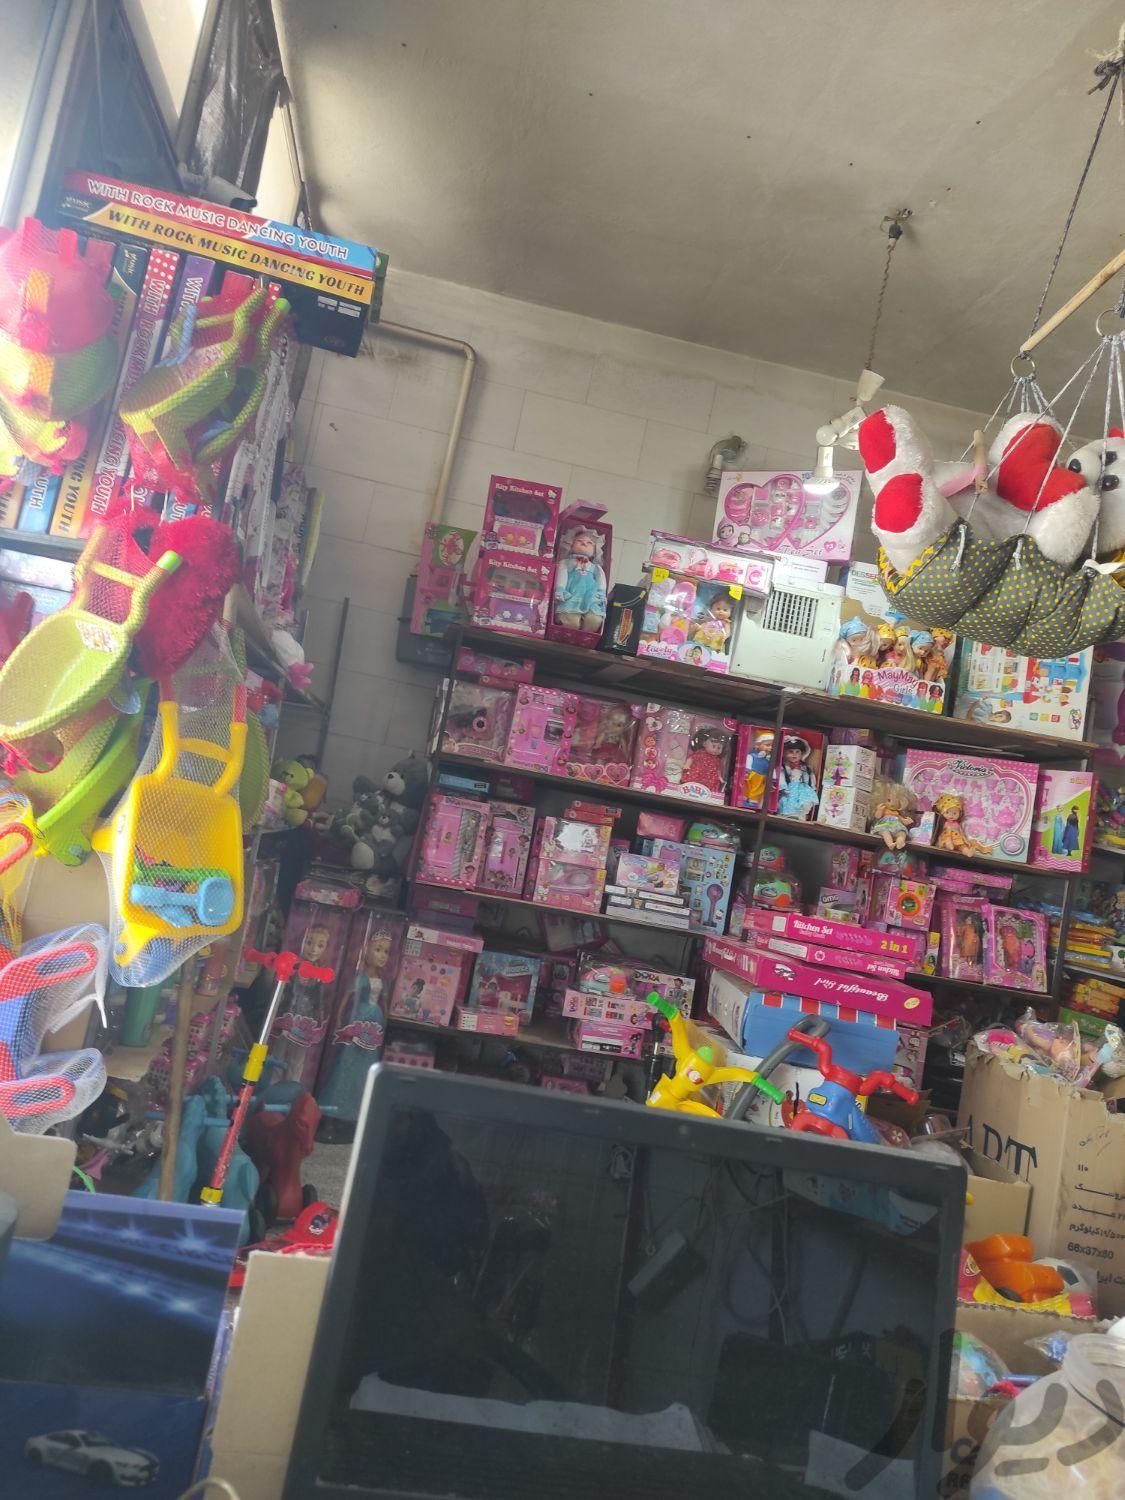 فروشنده در مغازه اسباب بازی الوند .خ ده متری|استخدام بازاریابی و فروش|الوند, |دیوار